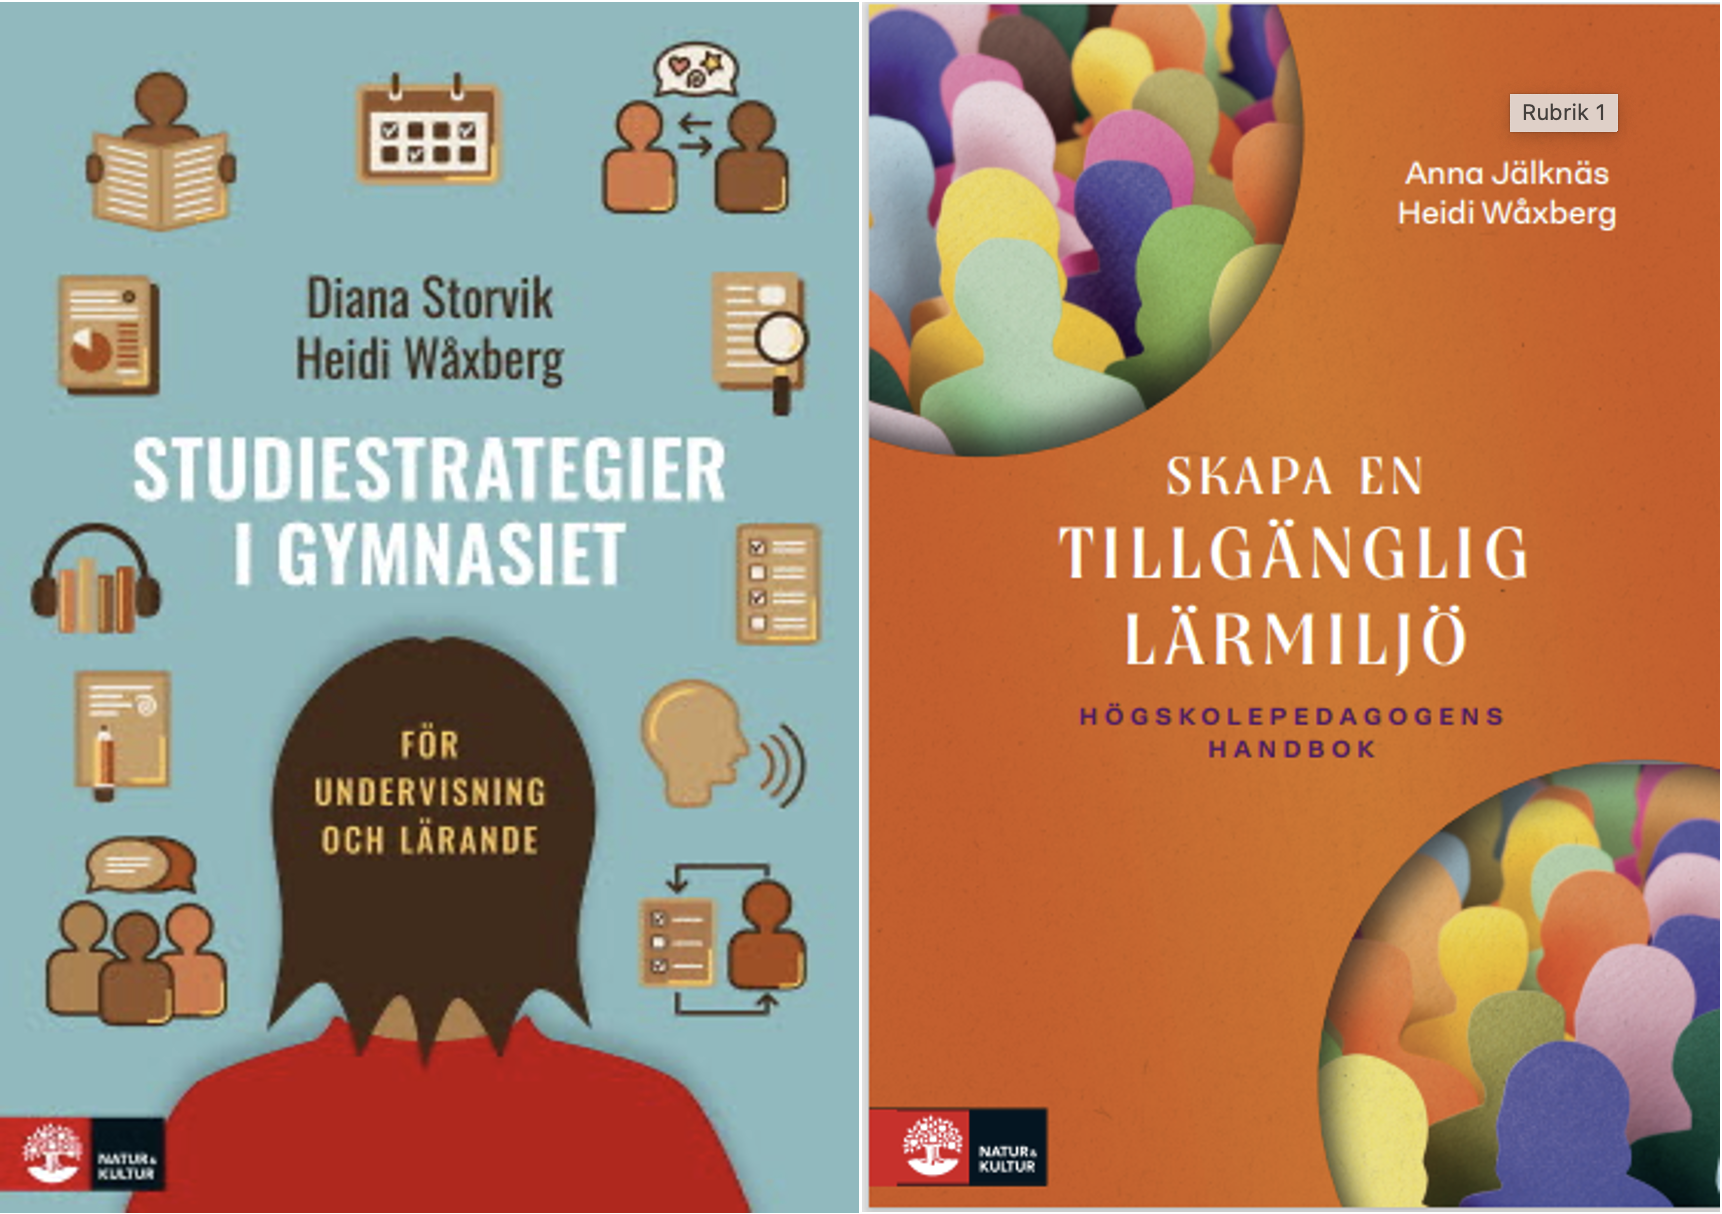 Omslag till  böckerna "Studiestrategier i gymnasiet" och "Skapa en tillgänglig lärmiljö – högskolepedagogens handbok".